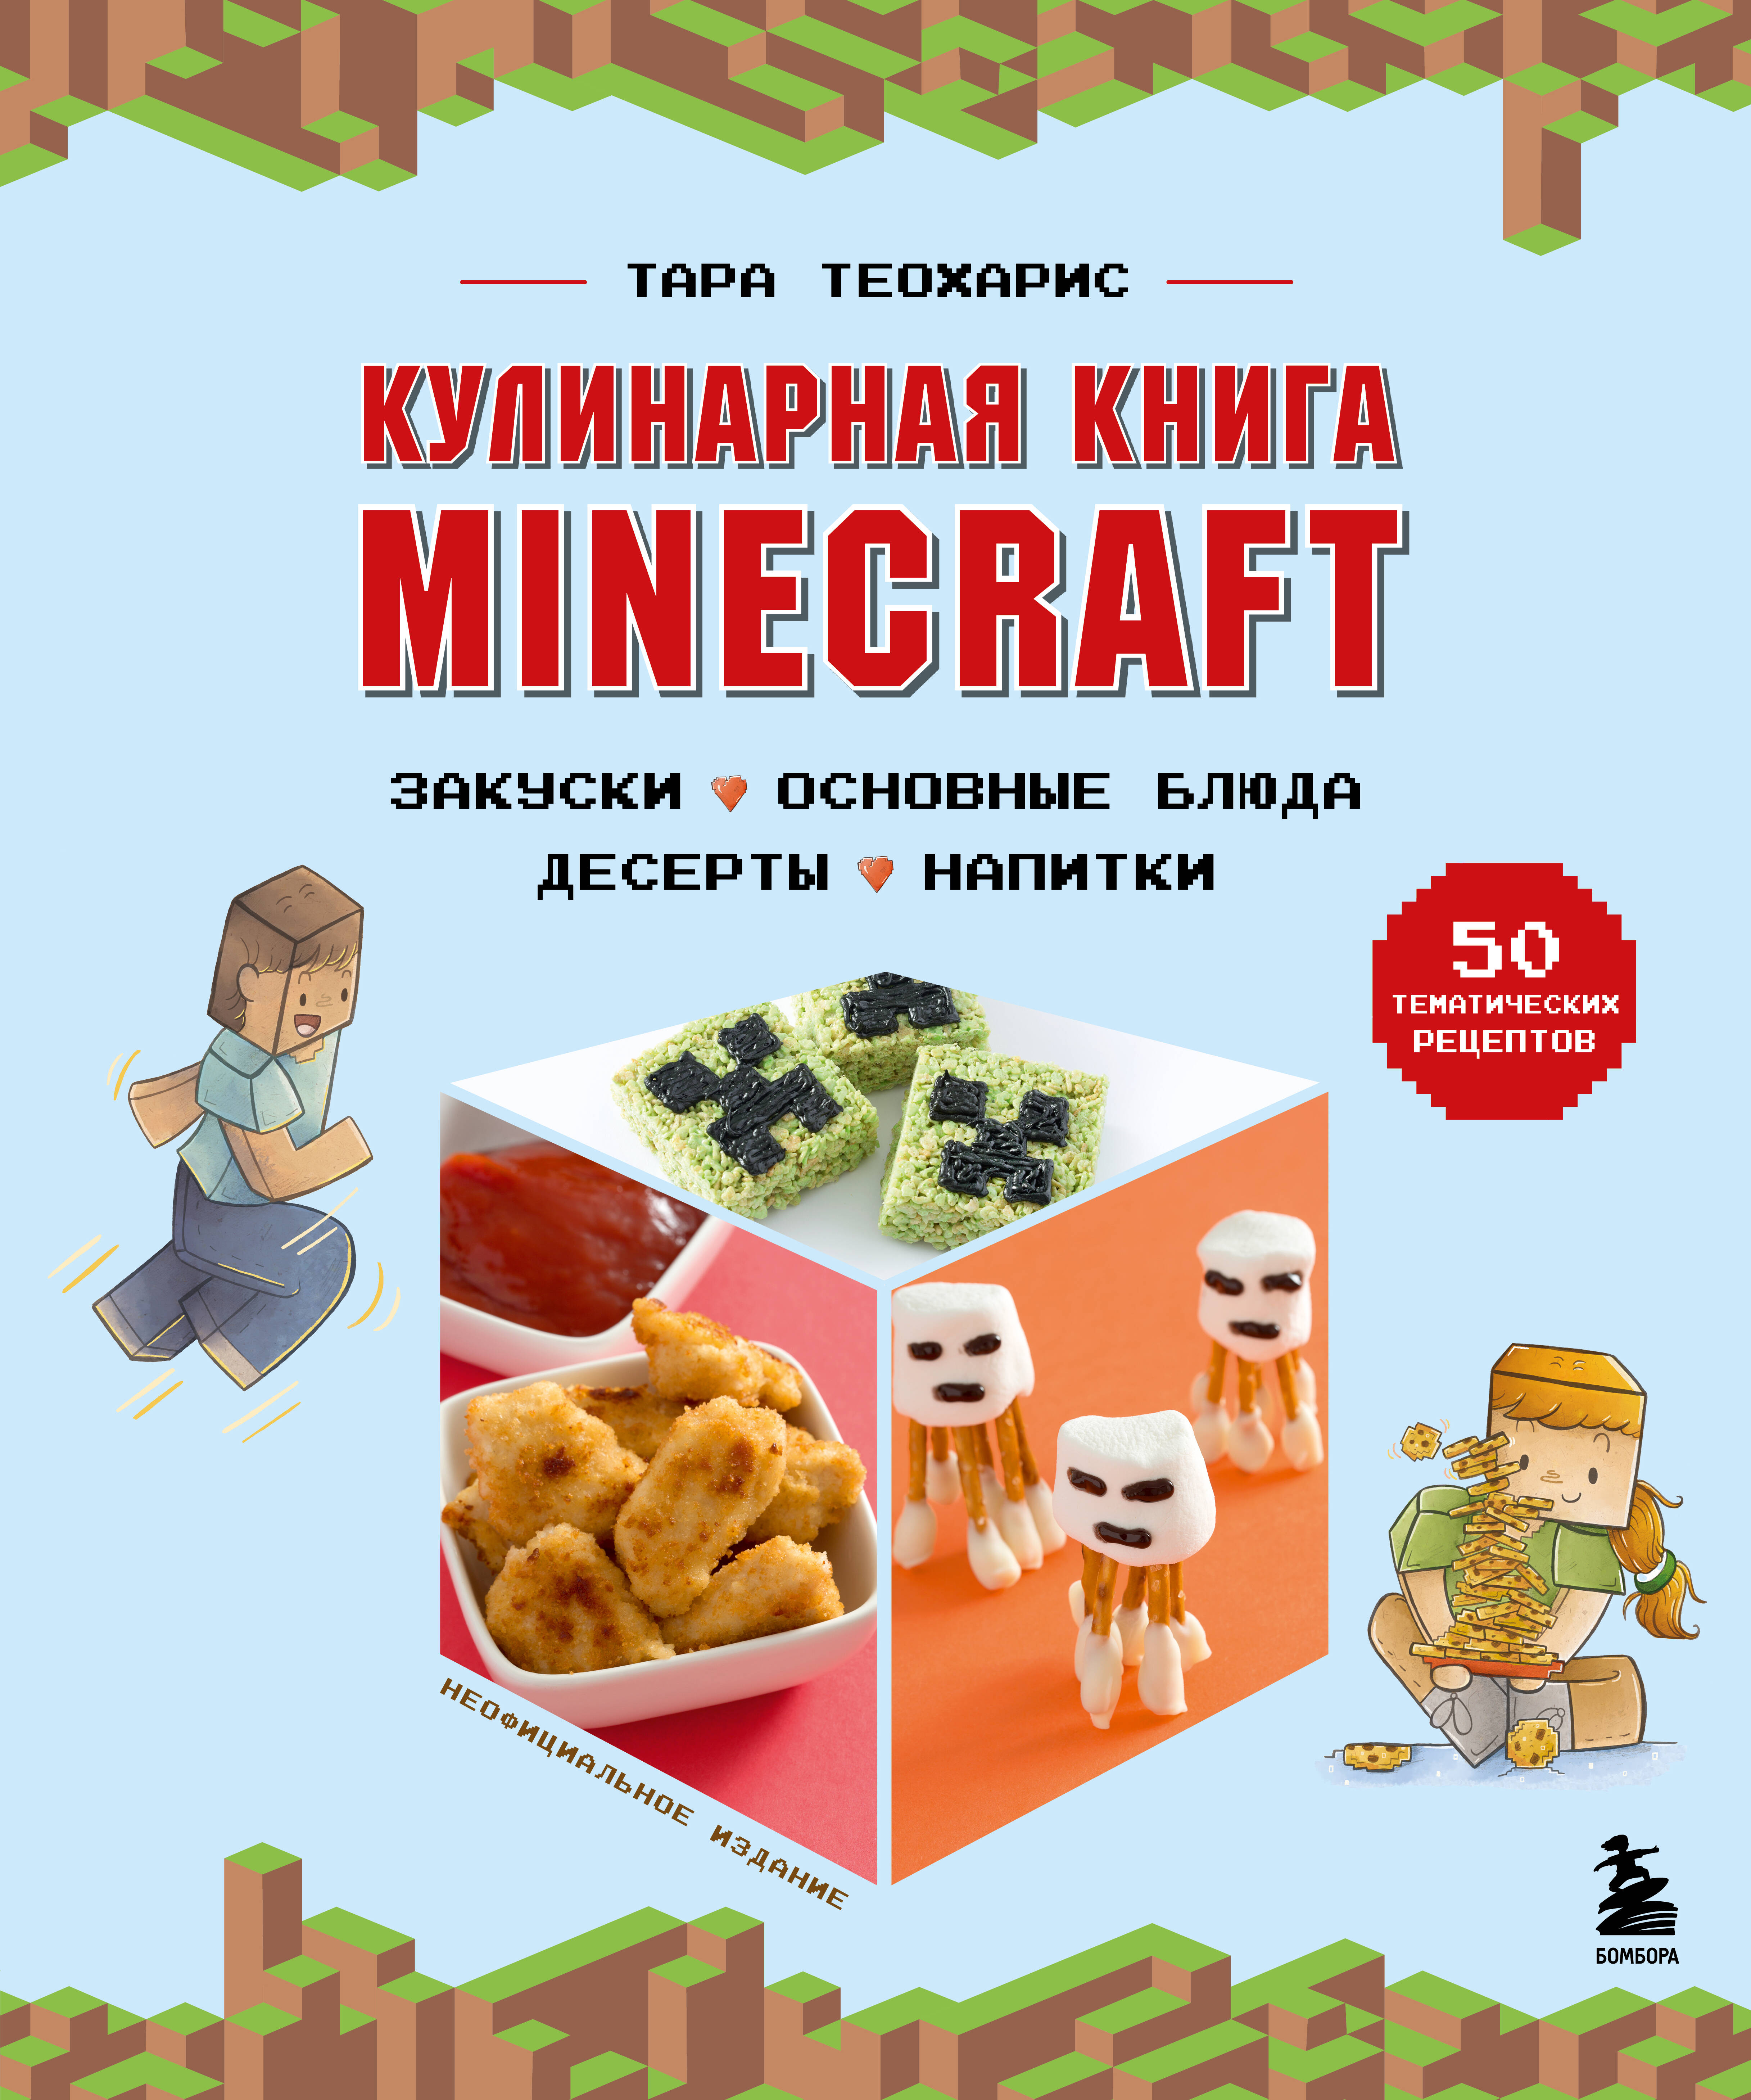 Теохарис Тара Кулинарная книга Minecraft. 50 рецептов, вдохновленных культовой компьютерной игрой